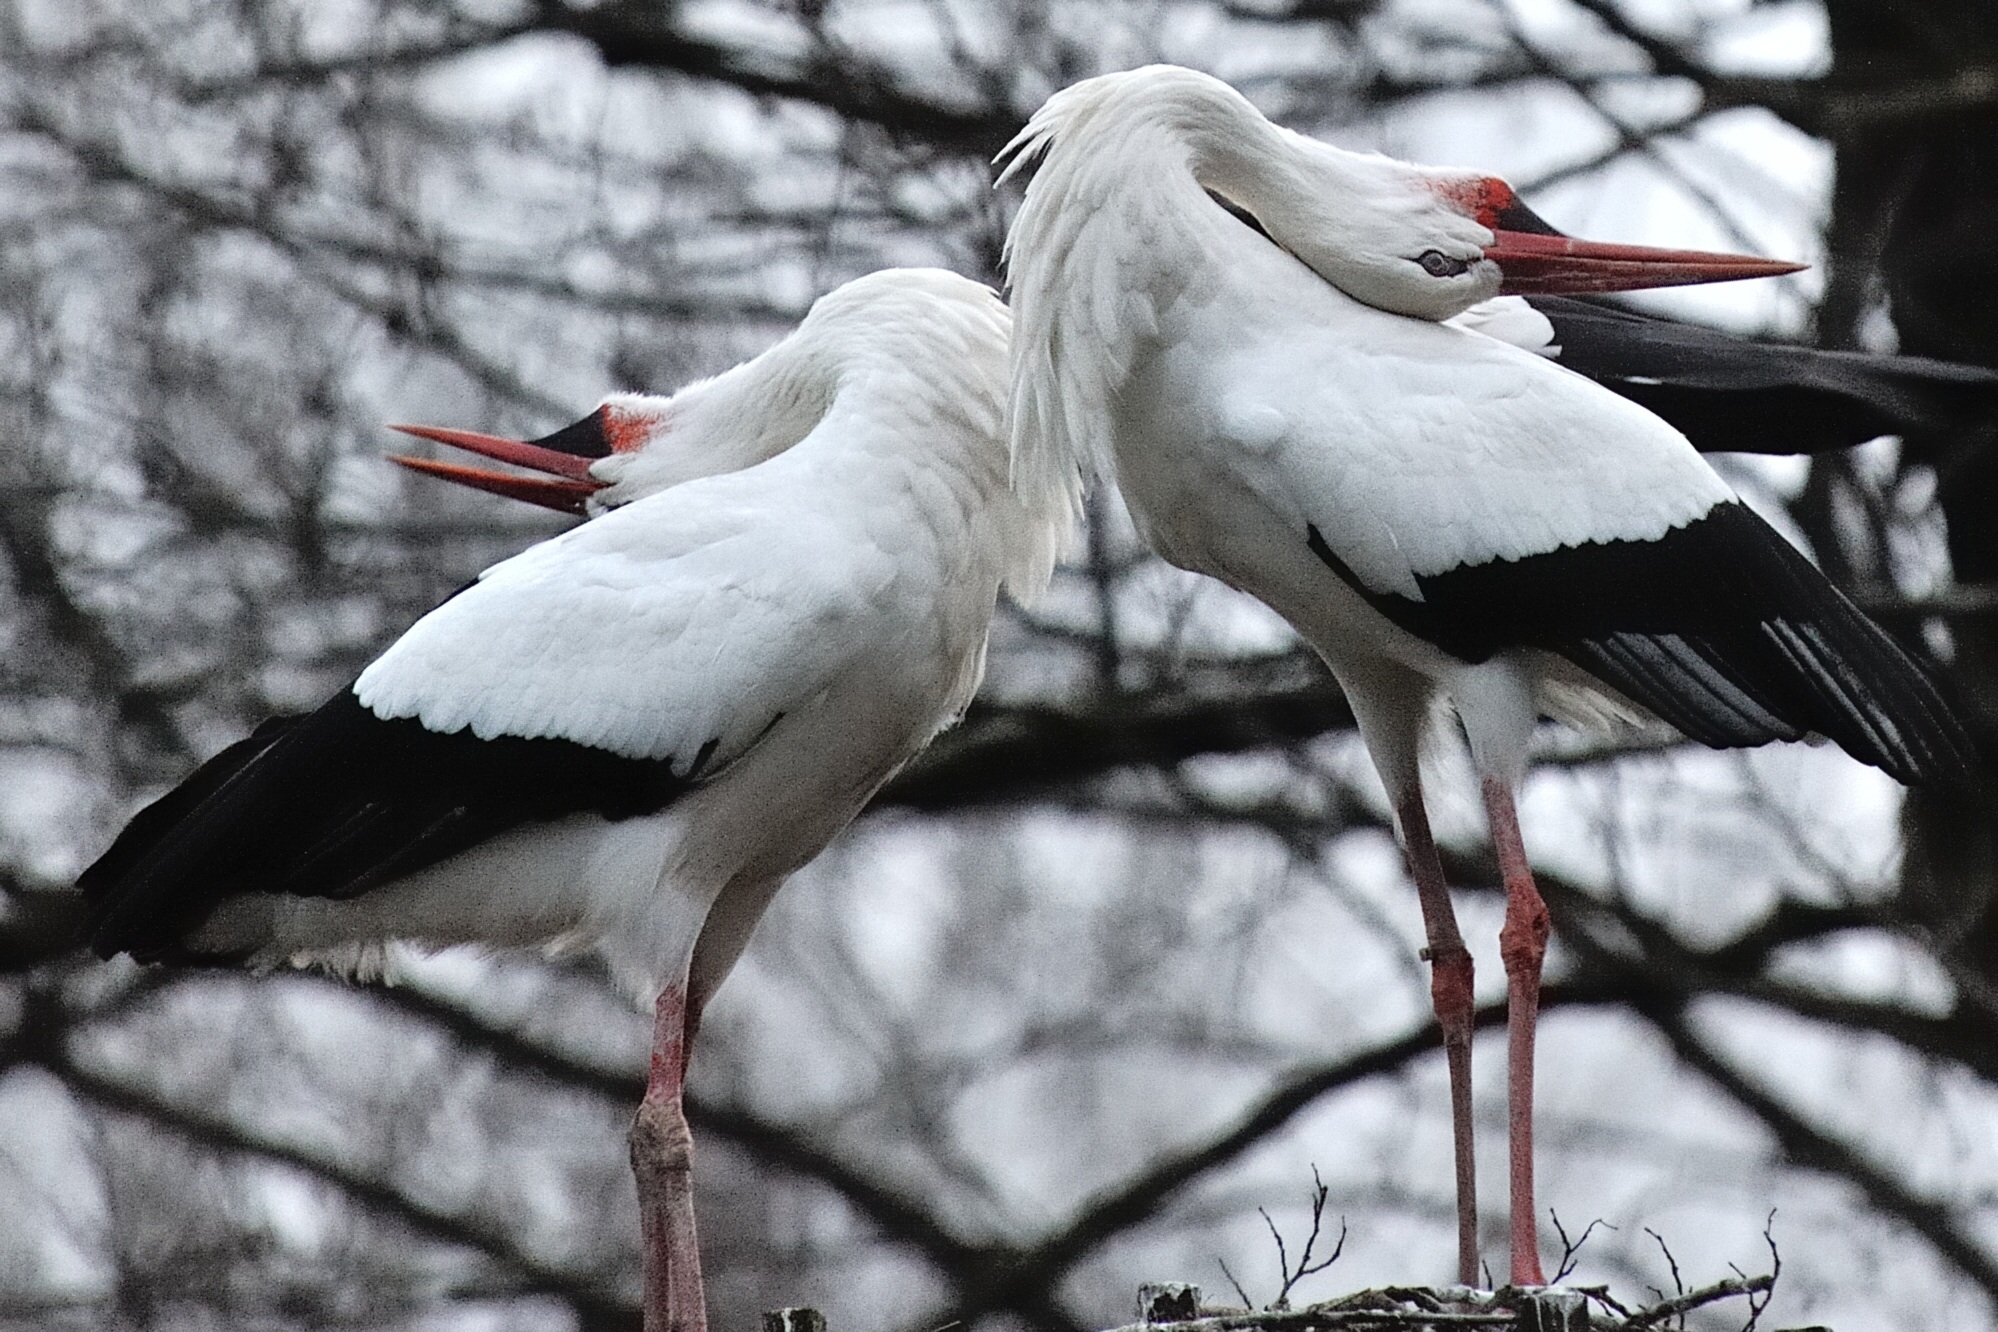 Courtship between storks...